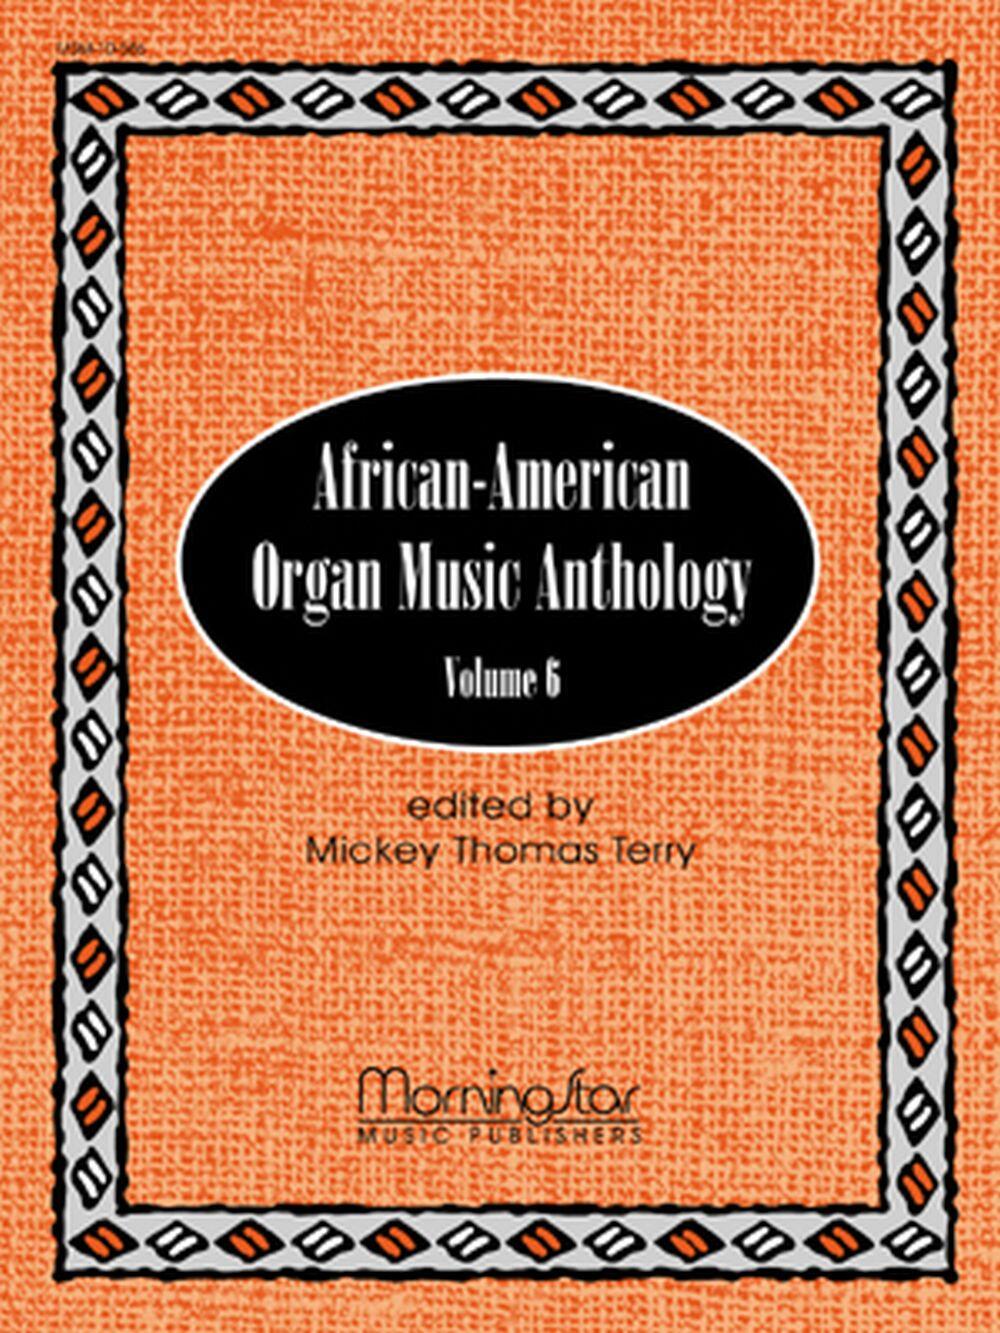 African-American Organ Music Anthology Volume 6 : photo 1